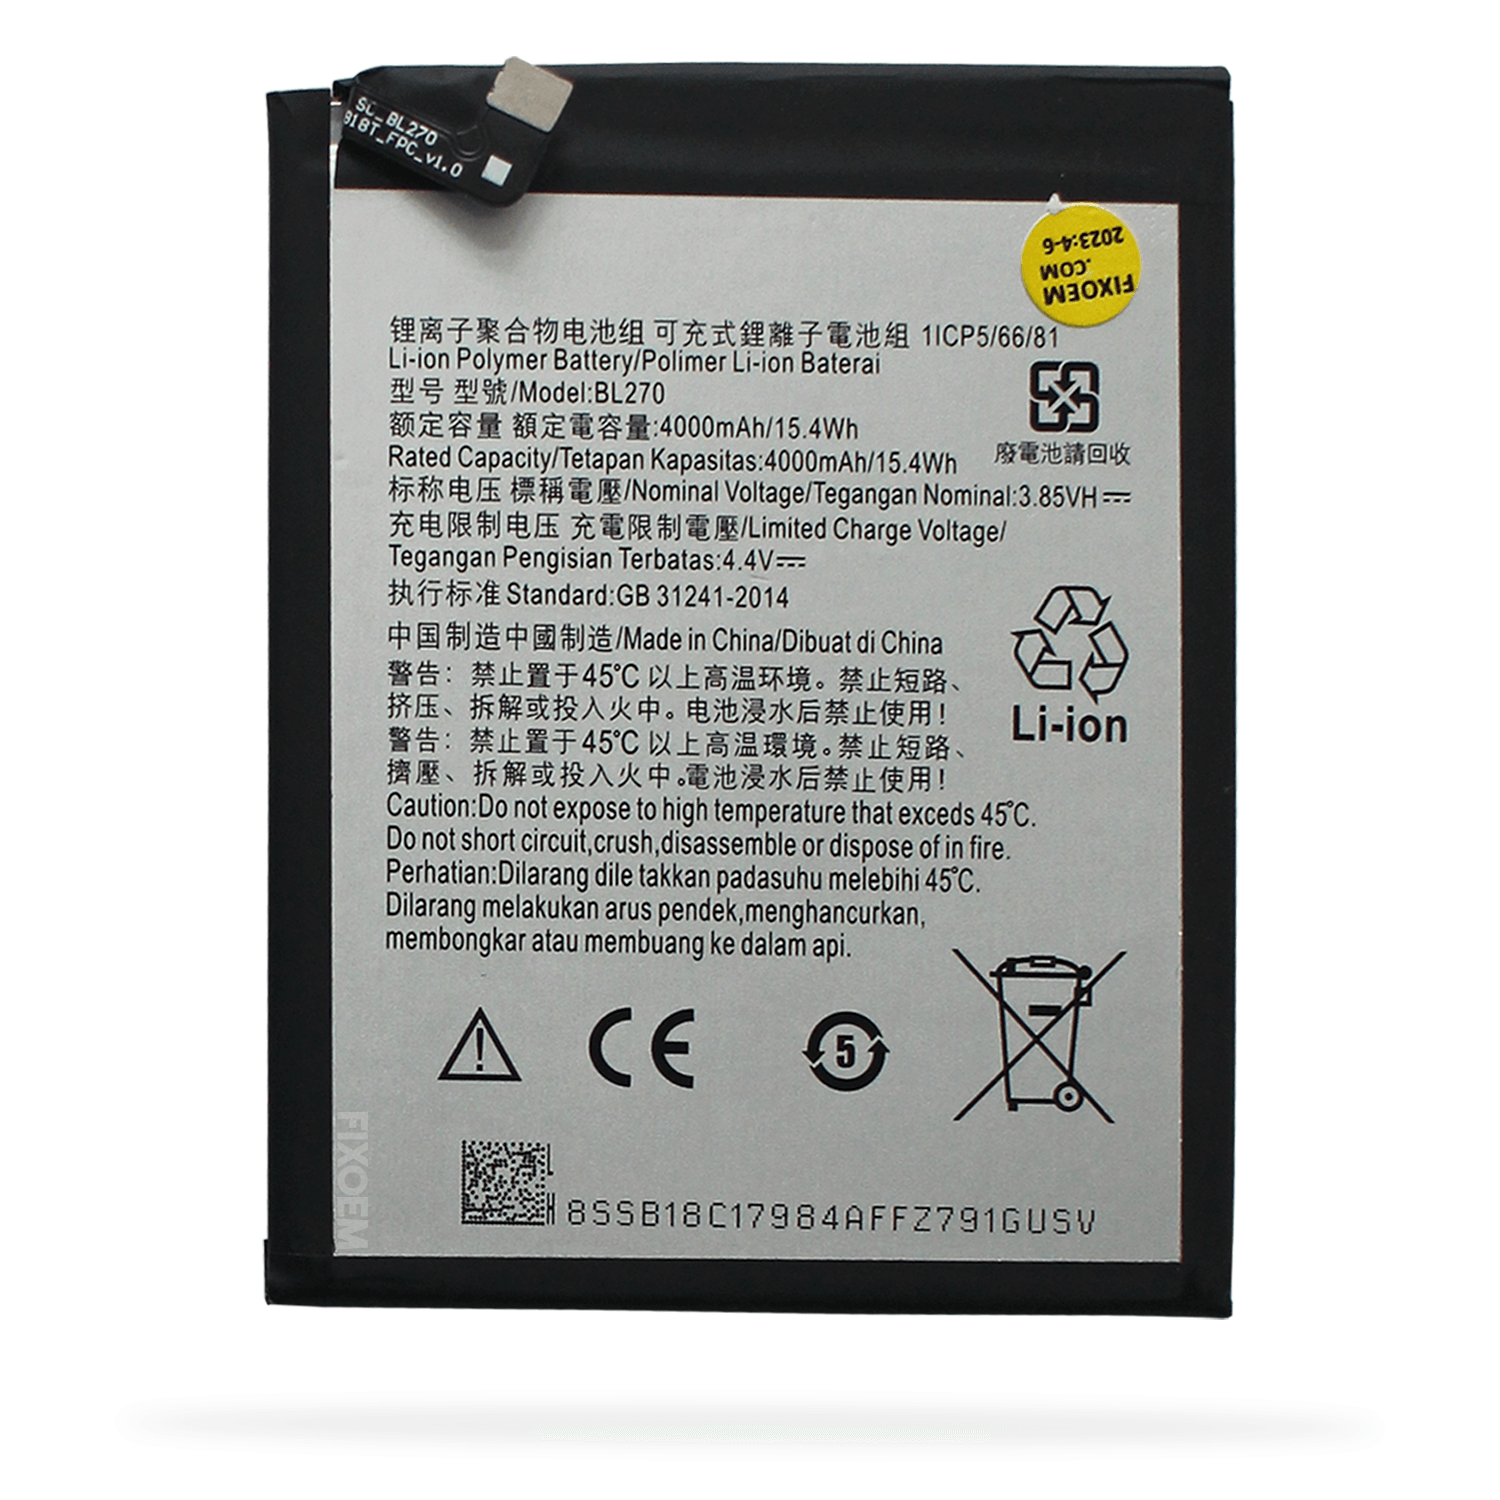 Bateria Moto G6 Play / Moto E5 / Lenovo K6 Note Xt1922 Xt1944 Bl270. a solo $ 120.00 Refaccion y puestos celulares, refurbish y microelectronica.- FixOEM